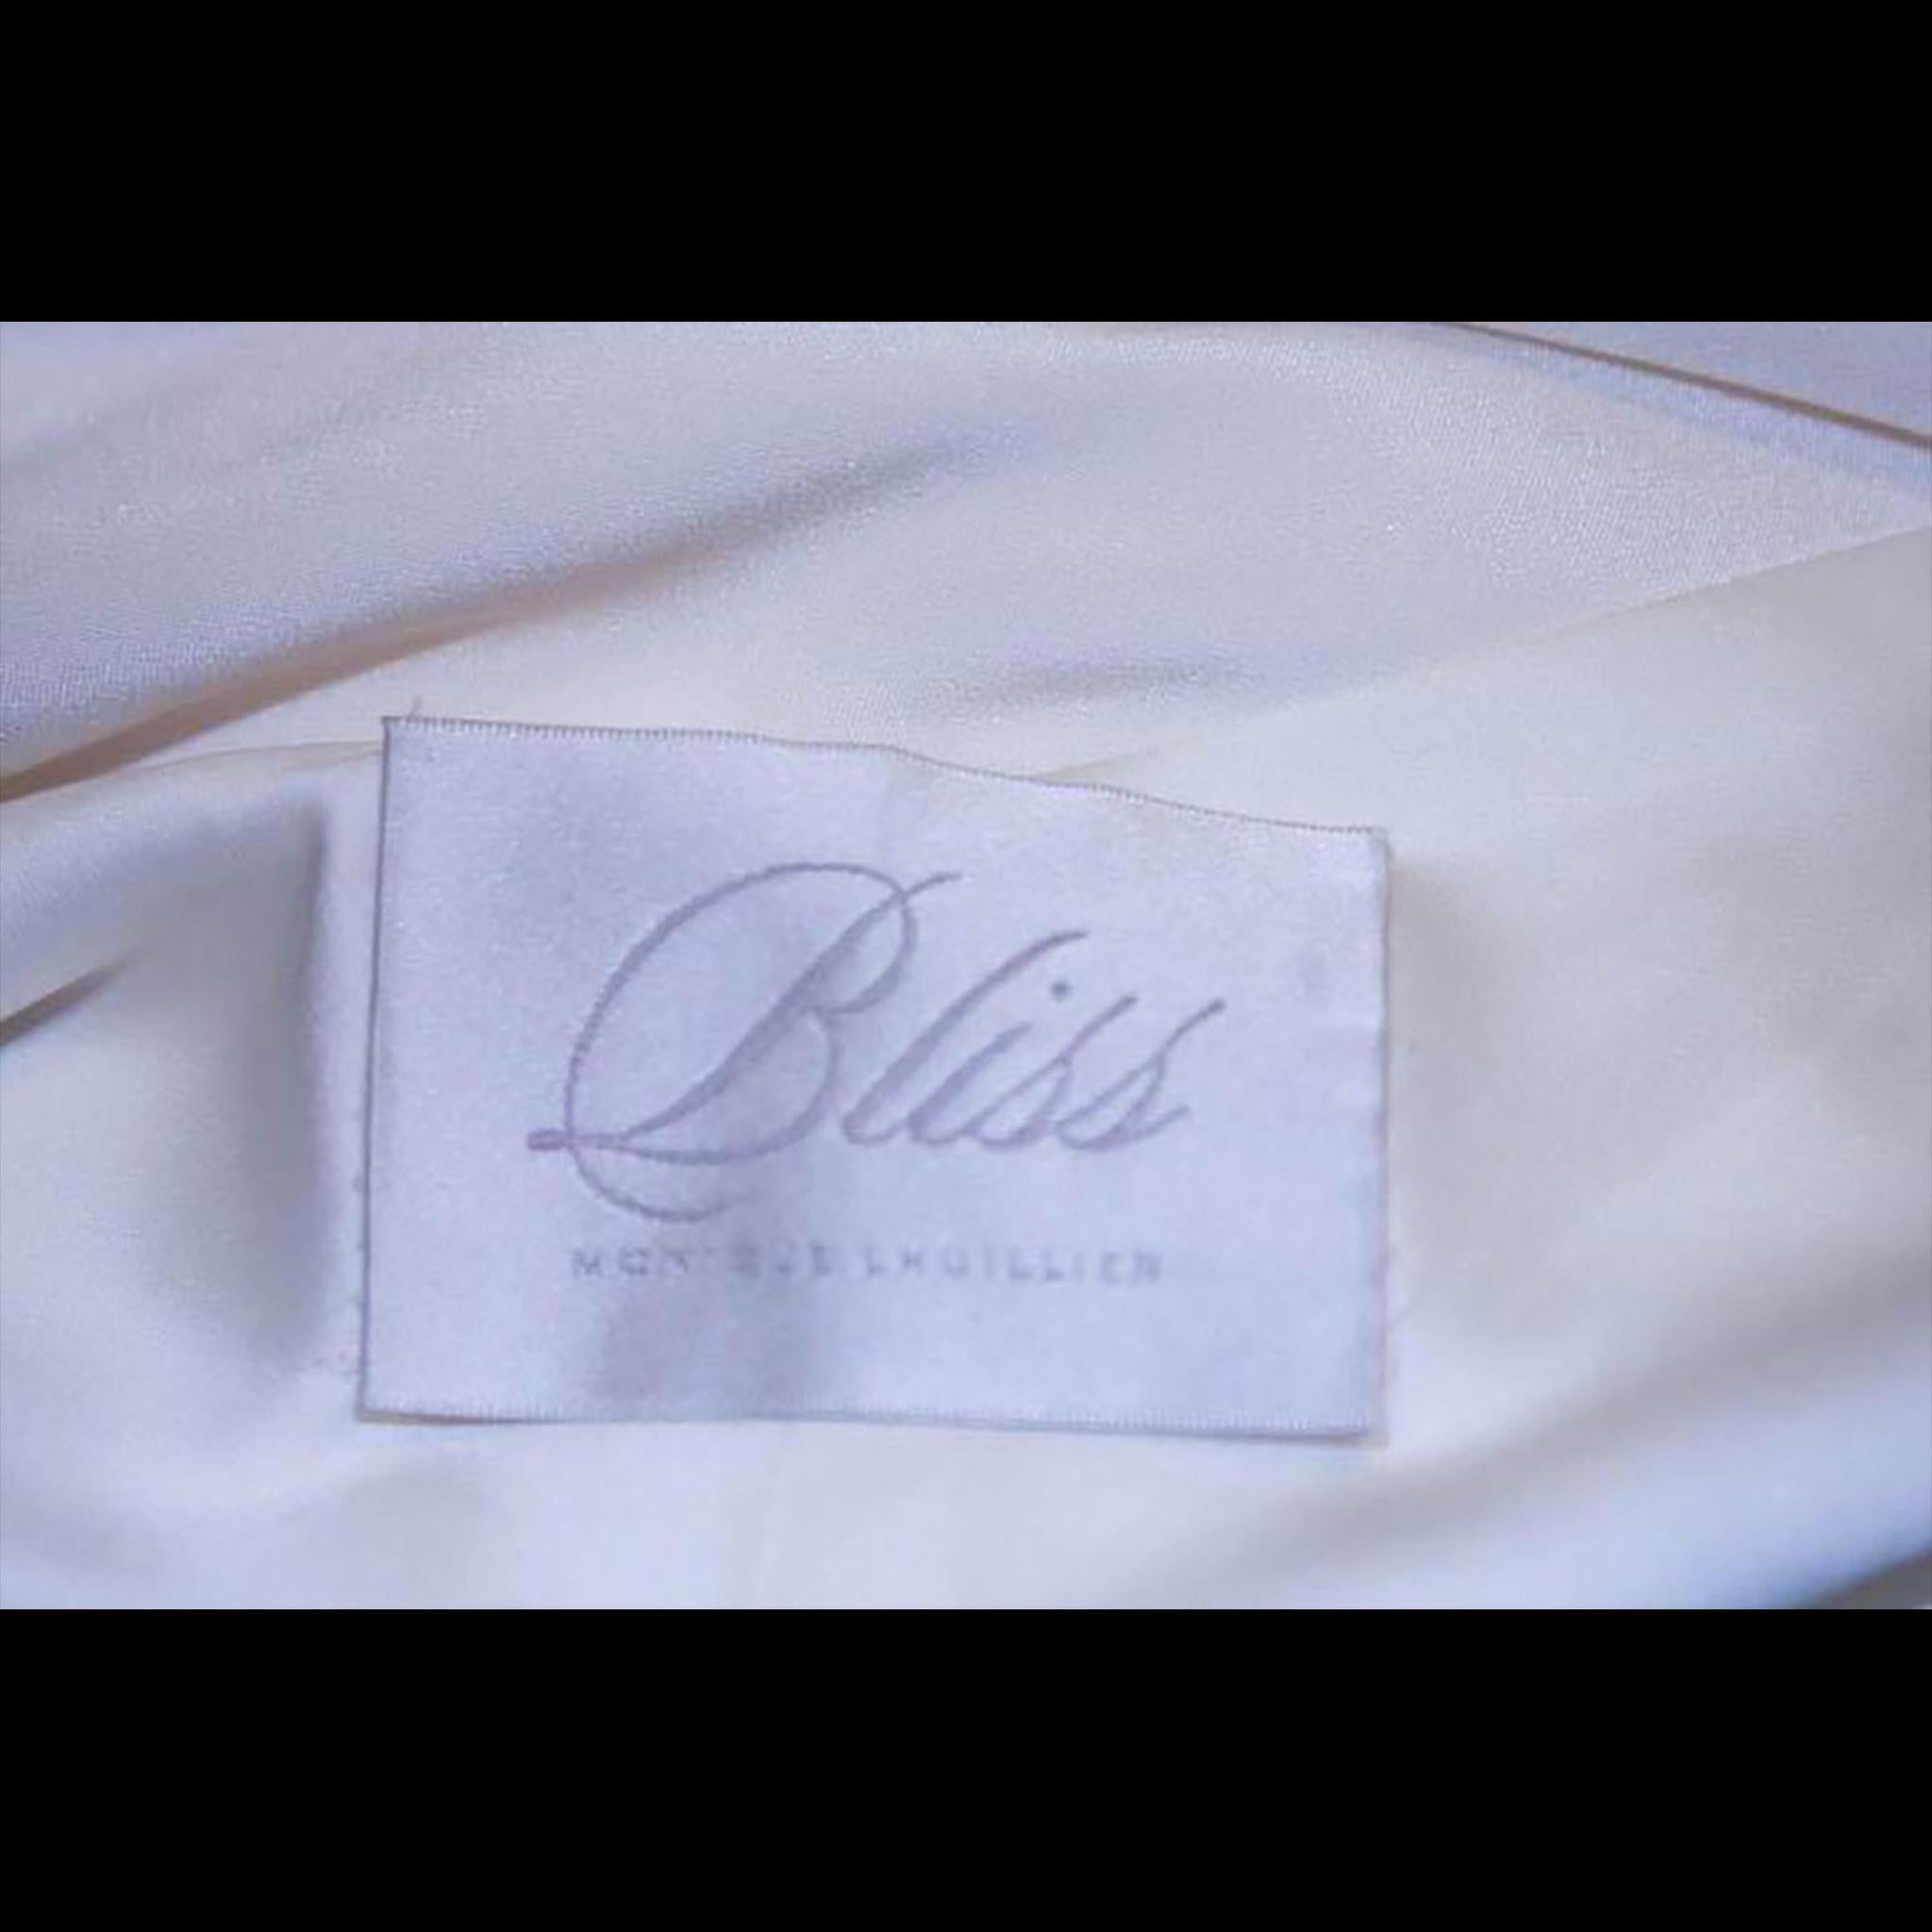 MONIQUE LHUILLIER BLISS Ivory Silk Empire Style Bias Cut Gown Size 4 2